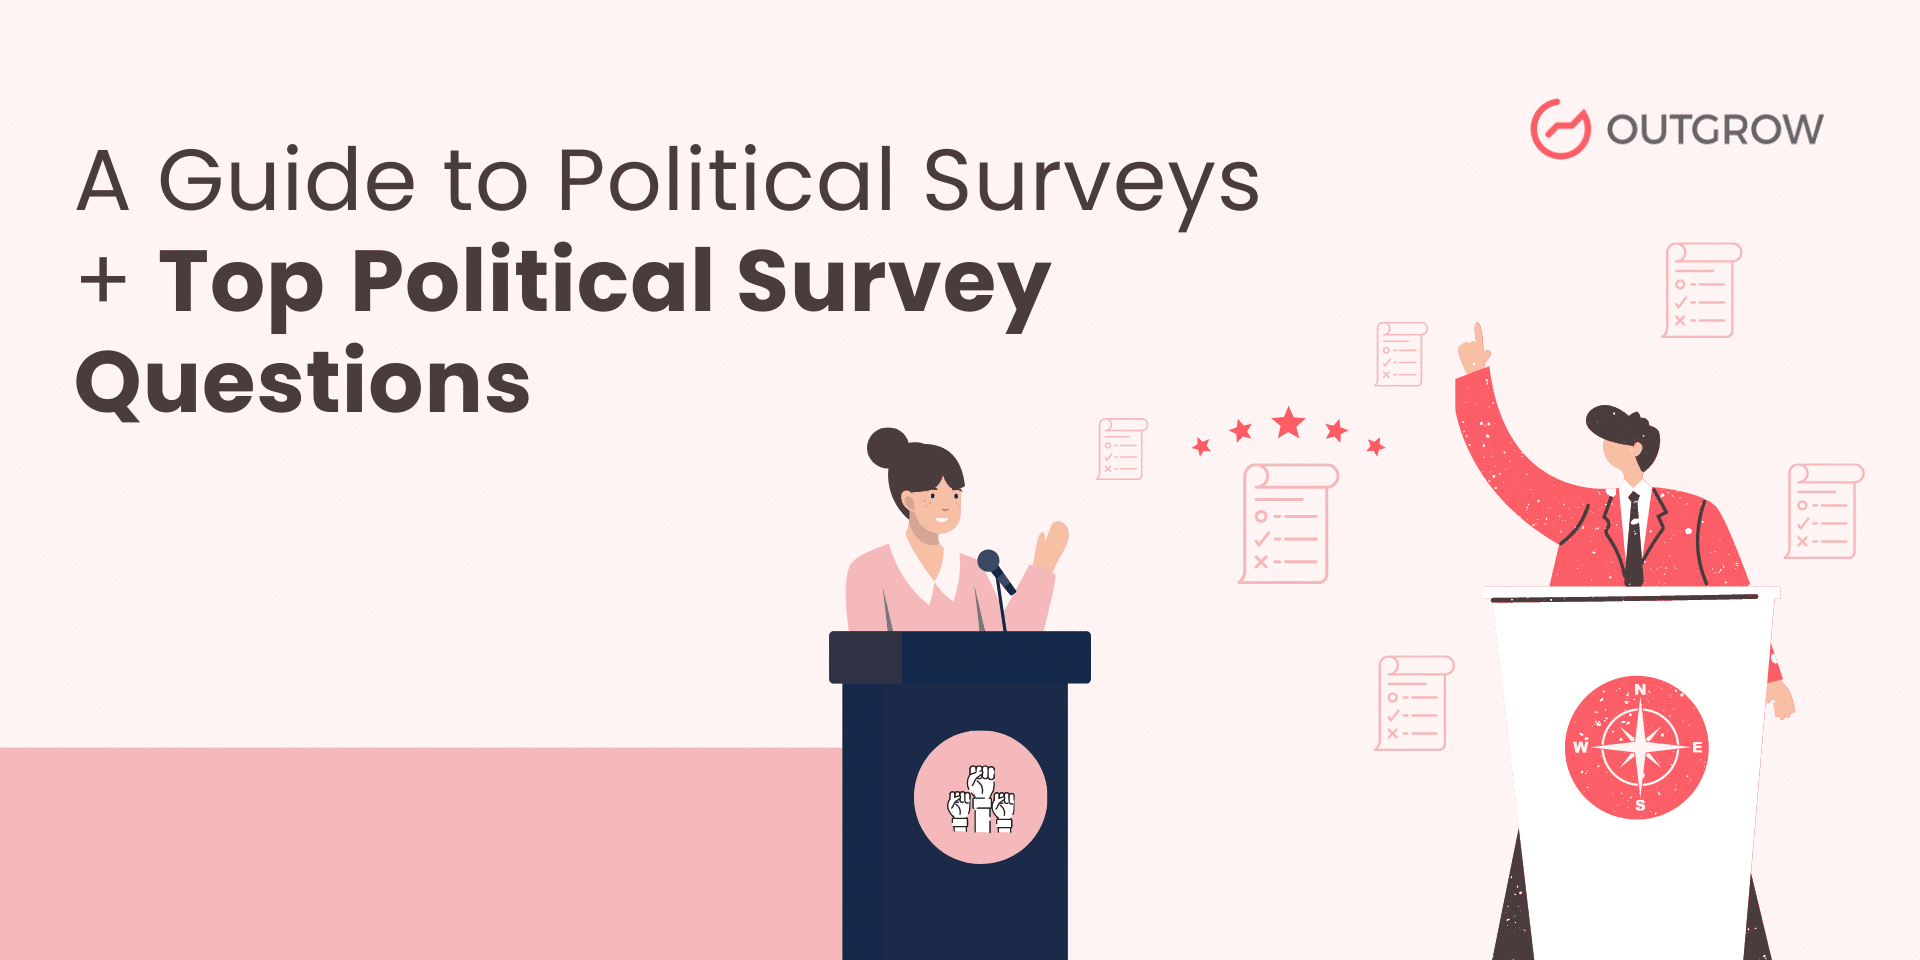 Top Political Survey Questions